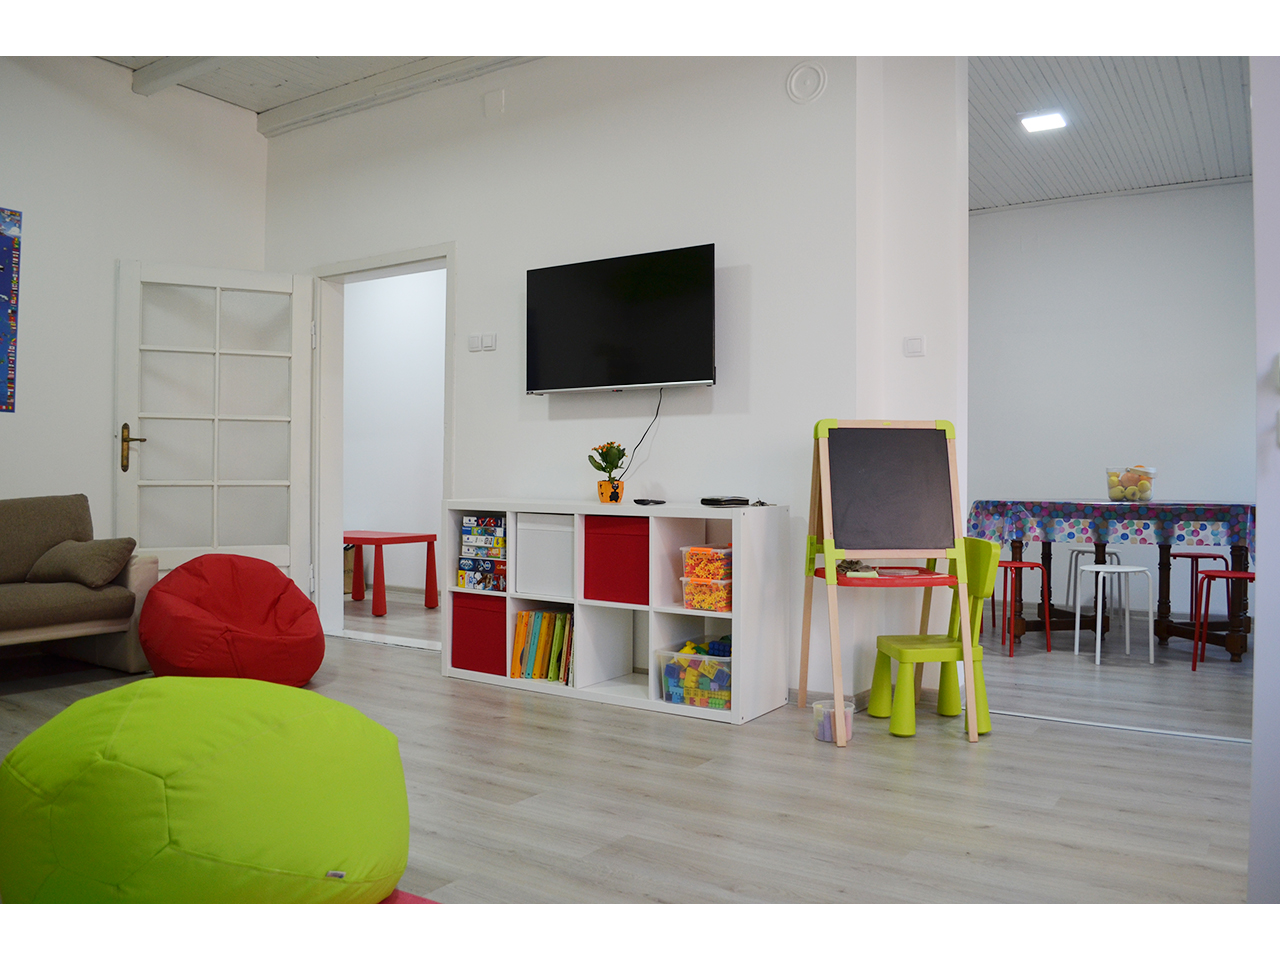 Photo 8 - VESELA AZBUKA - EXTENDED STAY FOR CHILDREN Extended daycare for children Belgrade